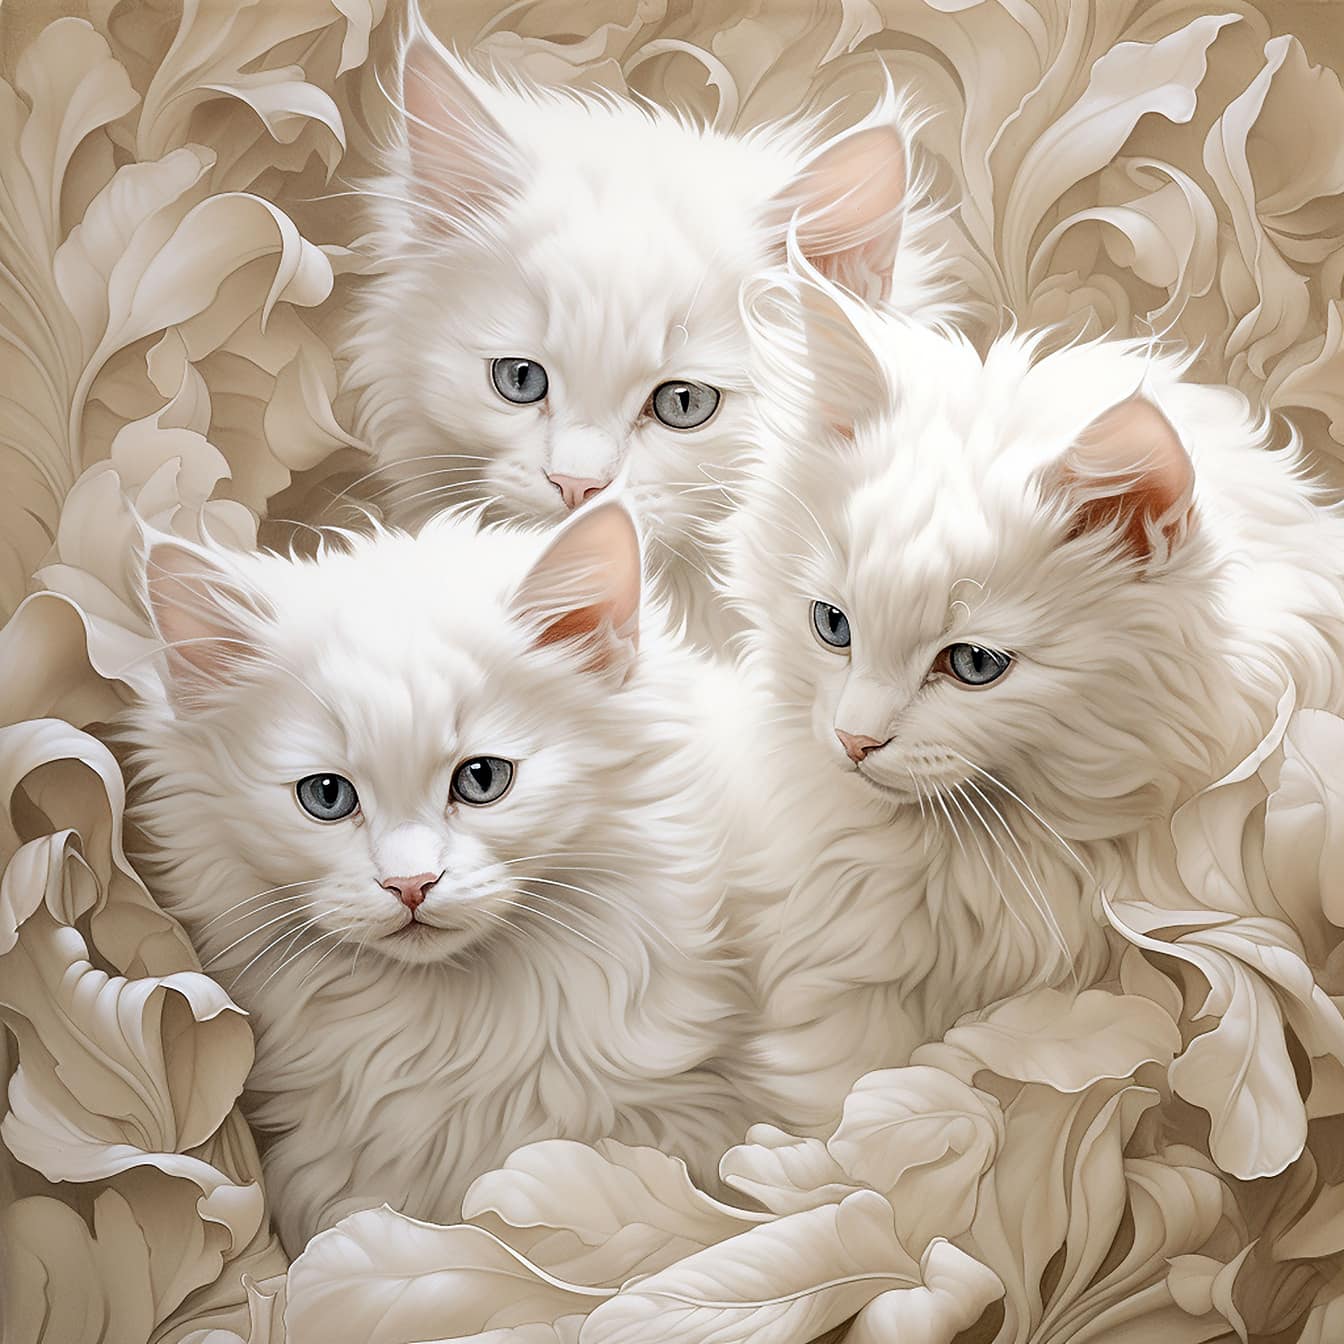 Három imádnivaló szőrös fehér cica barokk stílusú illusztráció